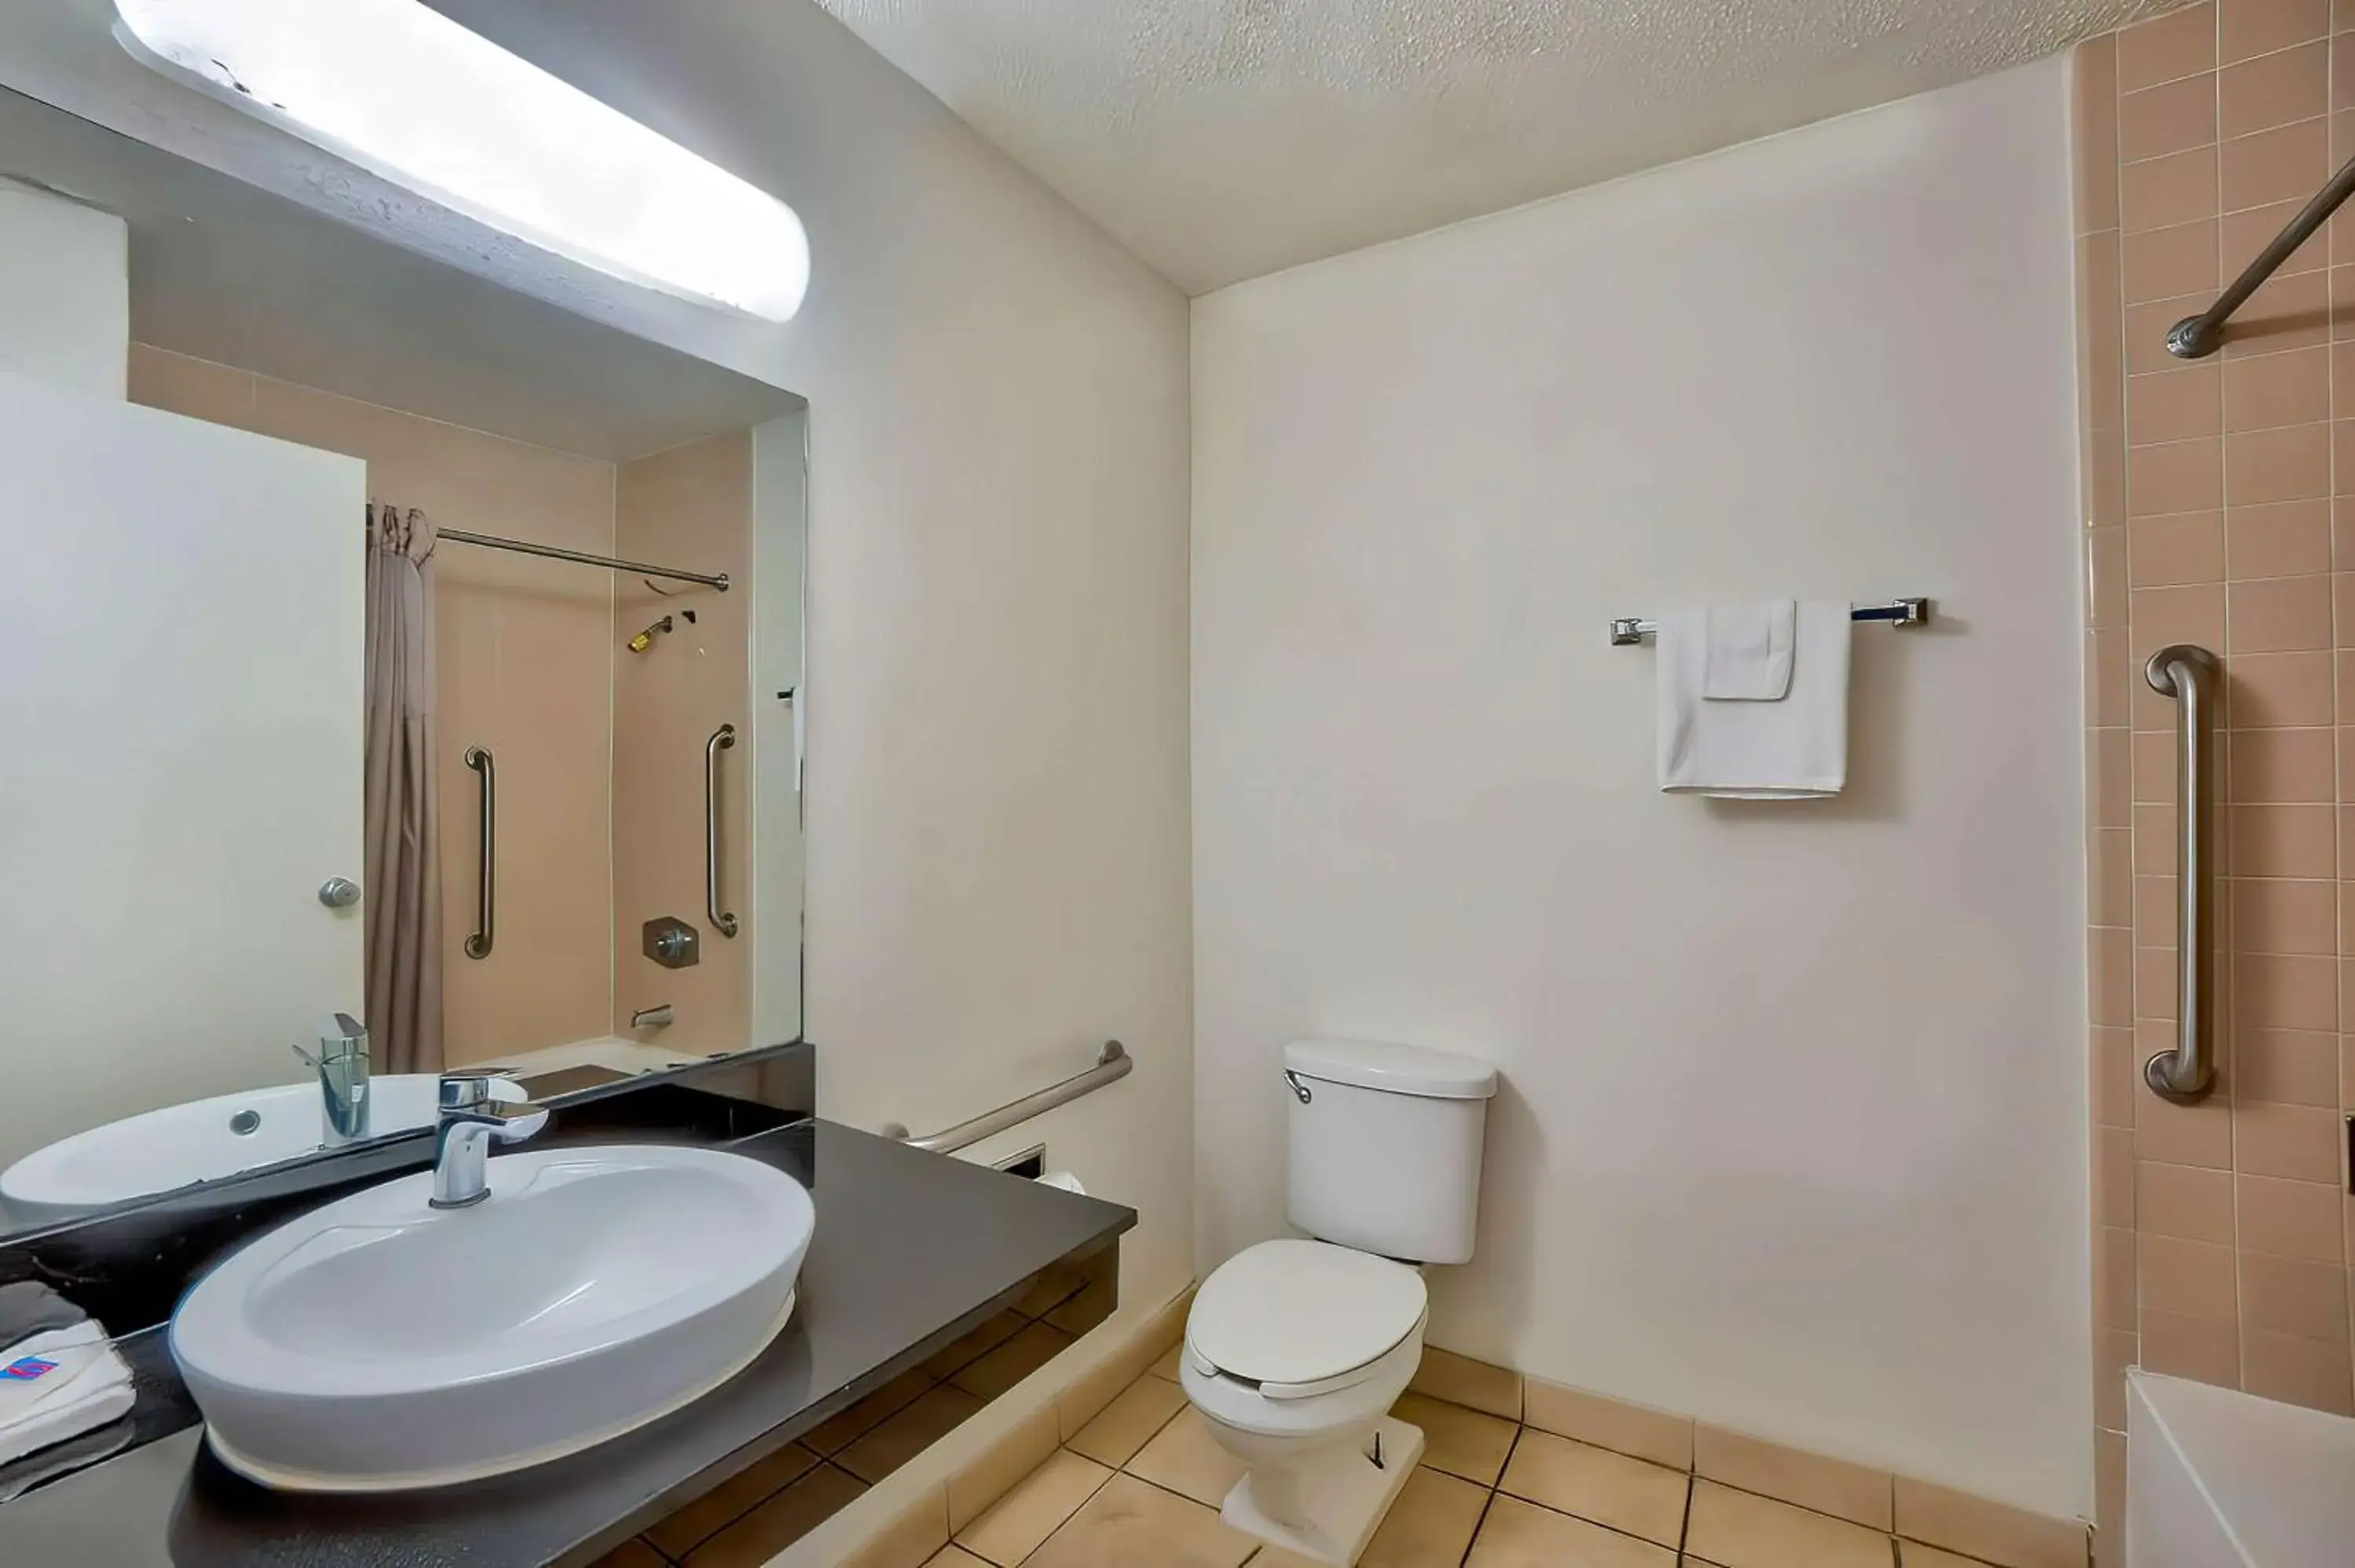 Bathroom in Studio 6 Gainesville, Fl